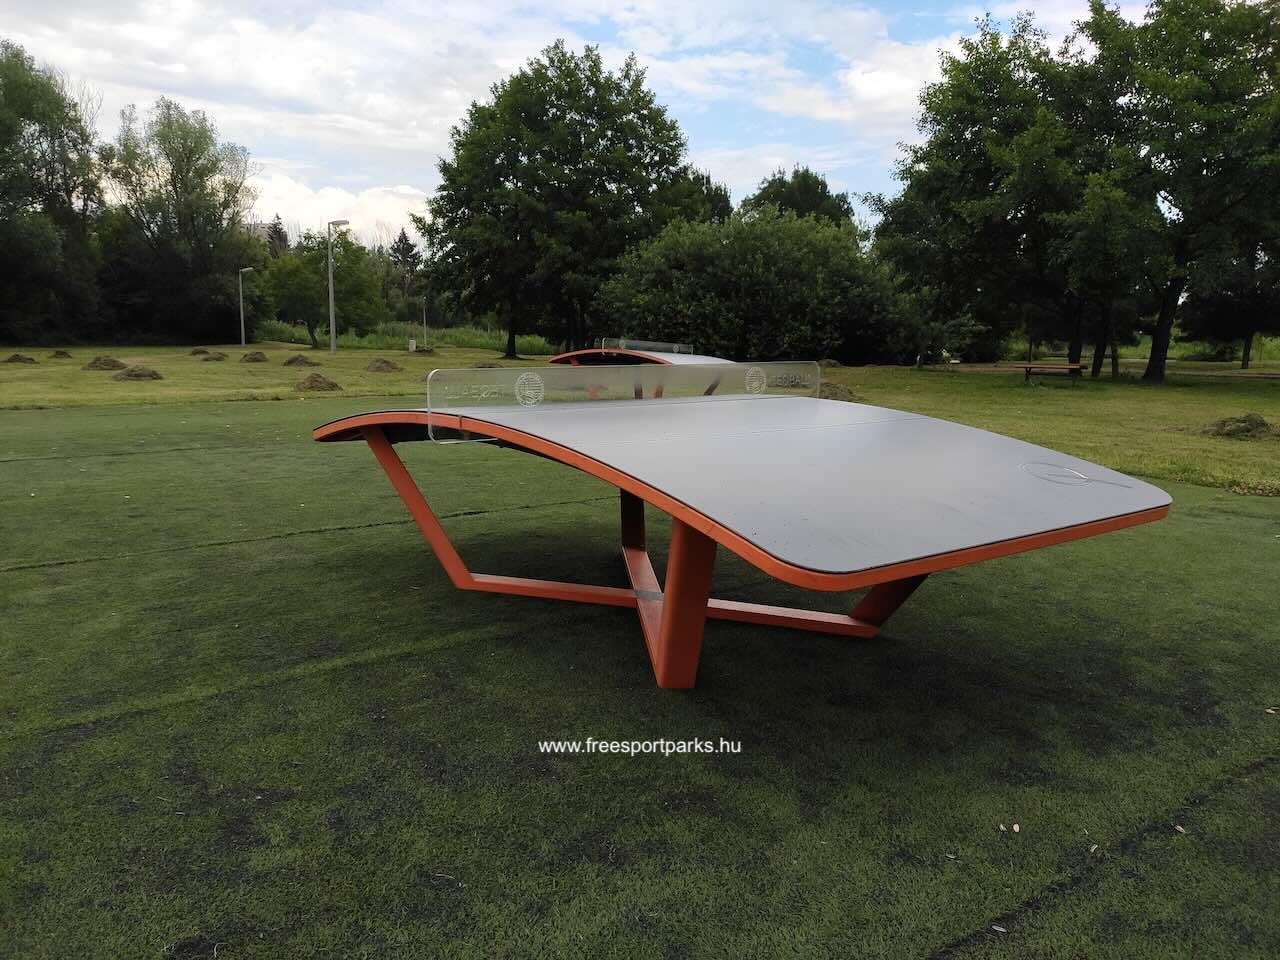 Teqball asztal, Kaposvár Városliget - Free Sport Parks Blog